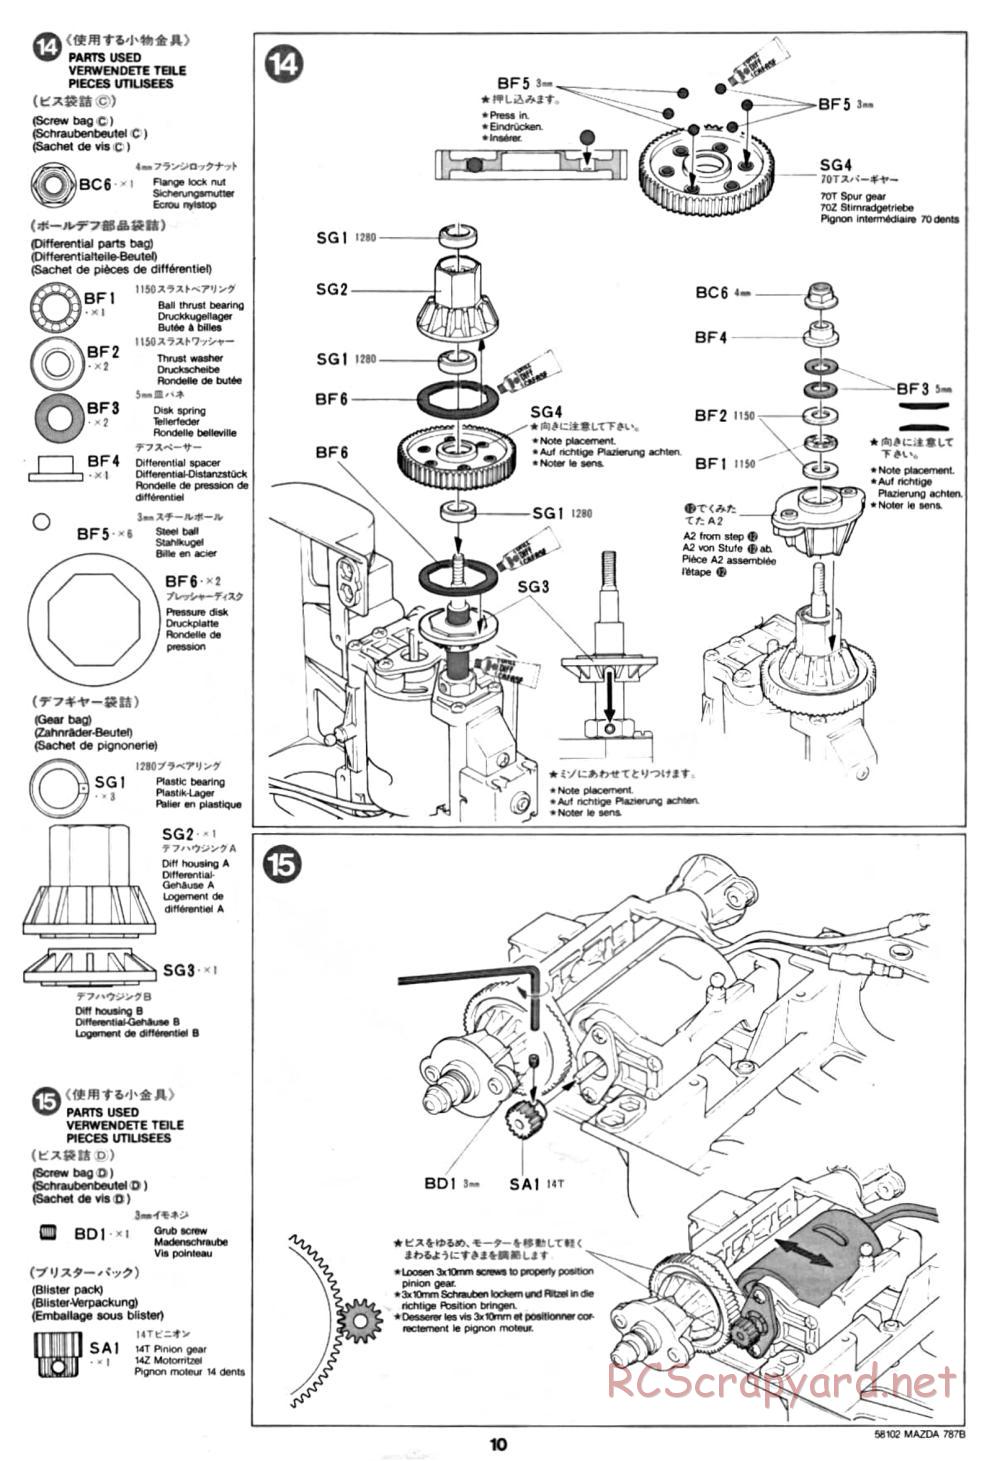 Tamiya - Mazda 787B - Group-C Chassis - Manual - Page 10